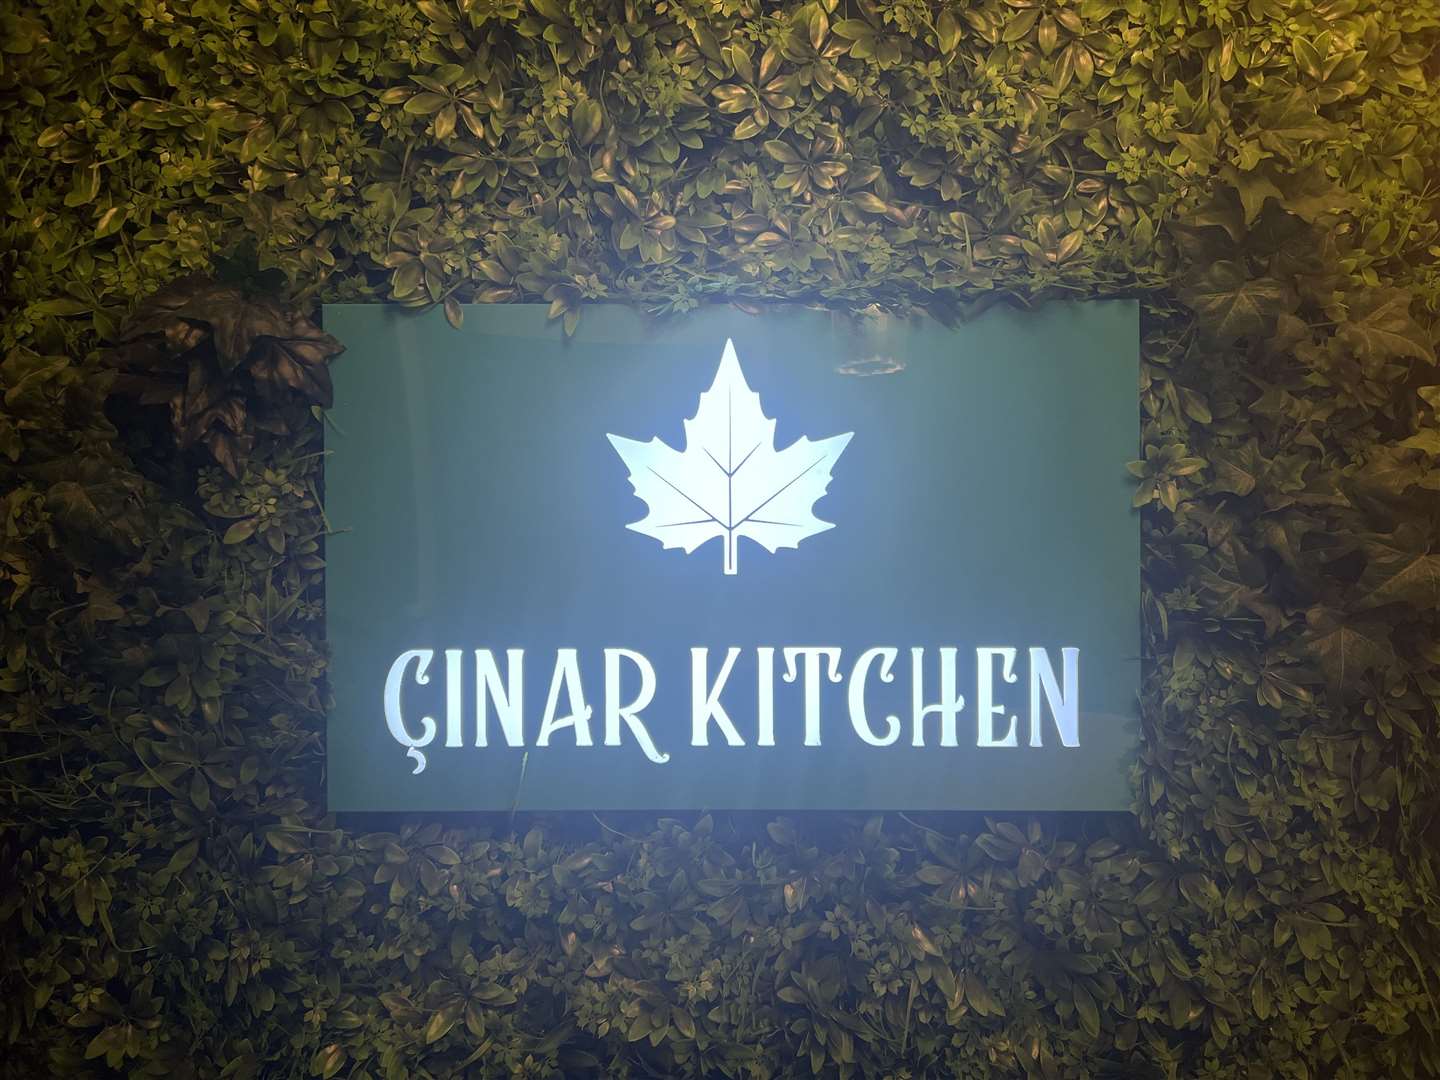 The Cinar Kitchen, Sittingbourne